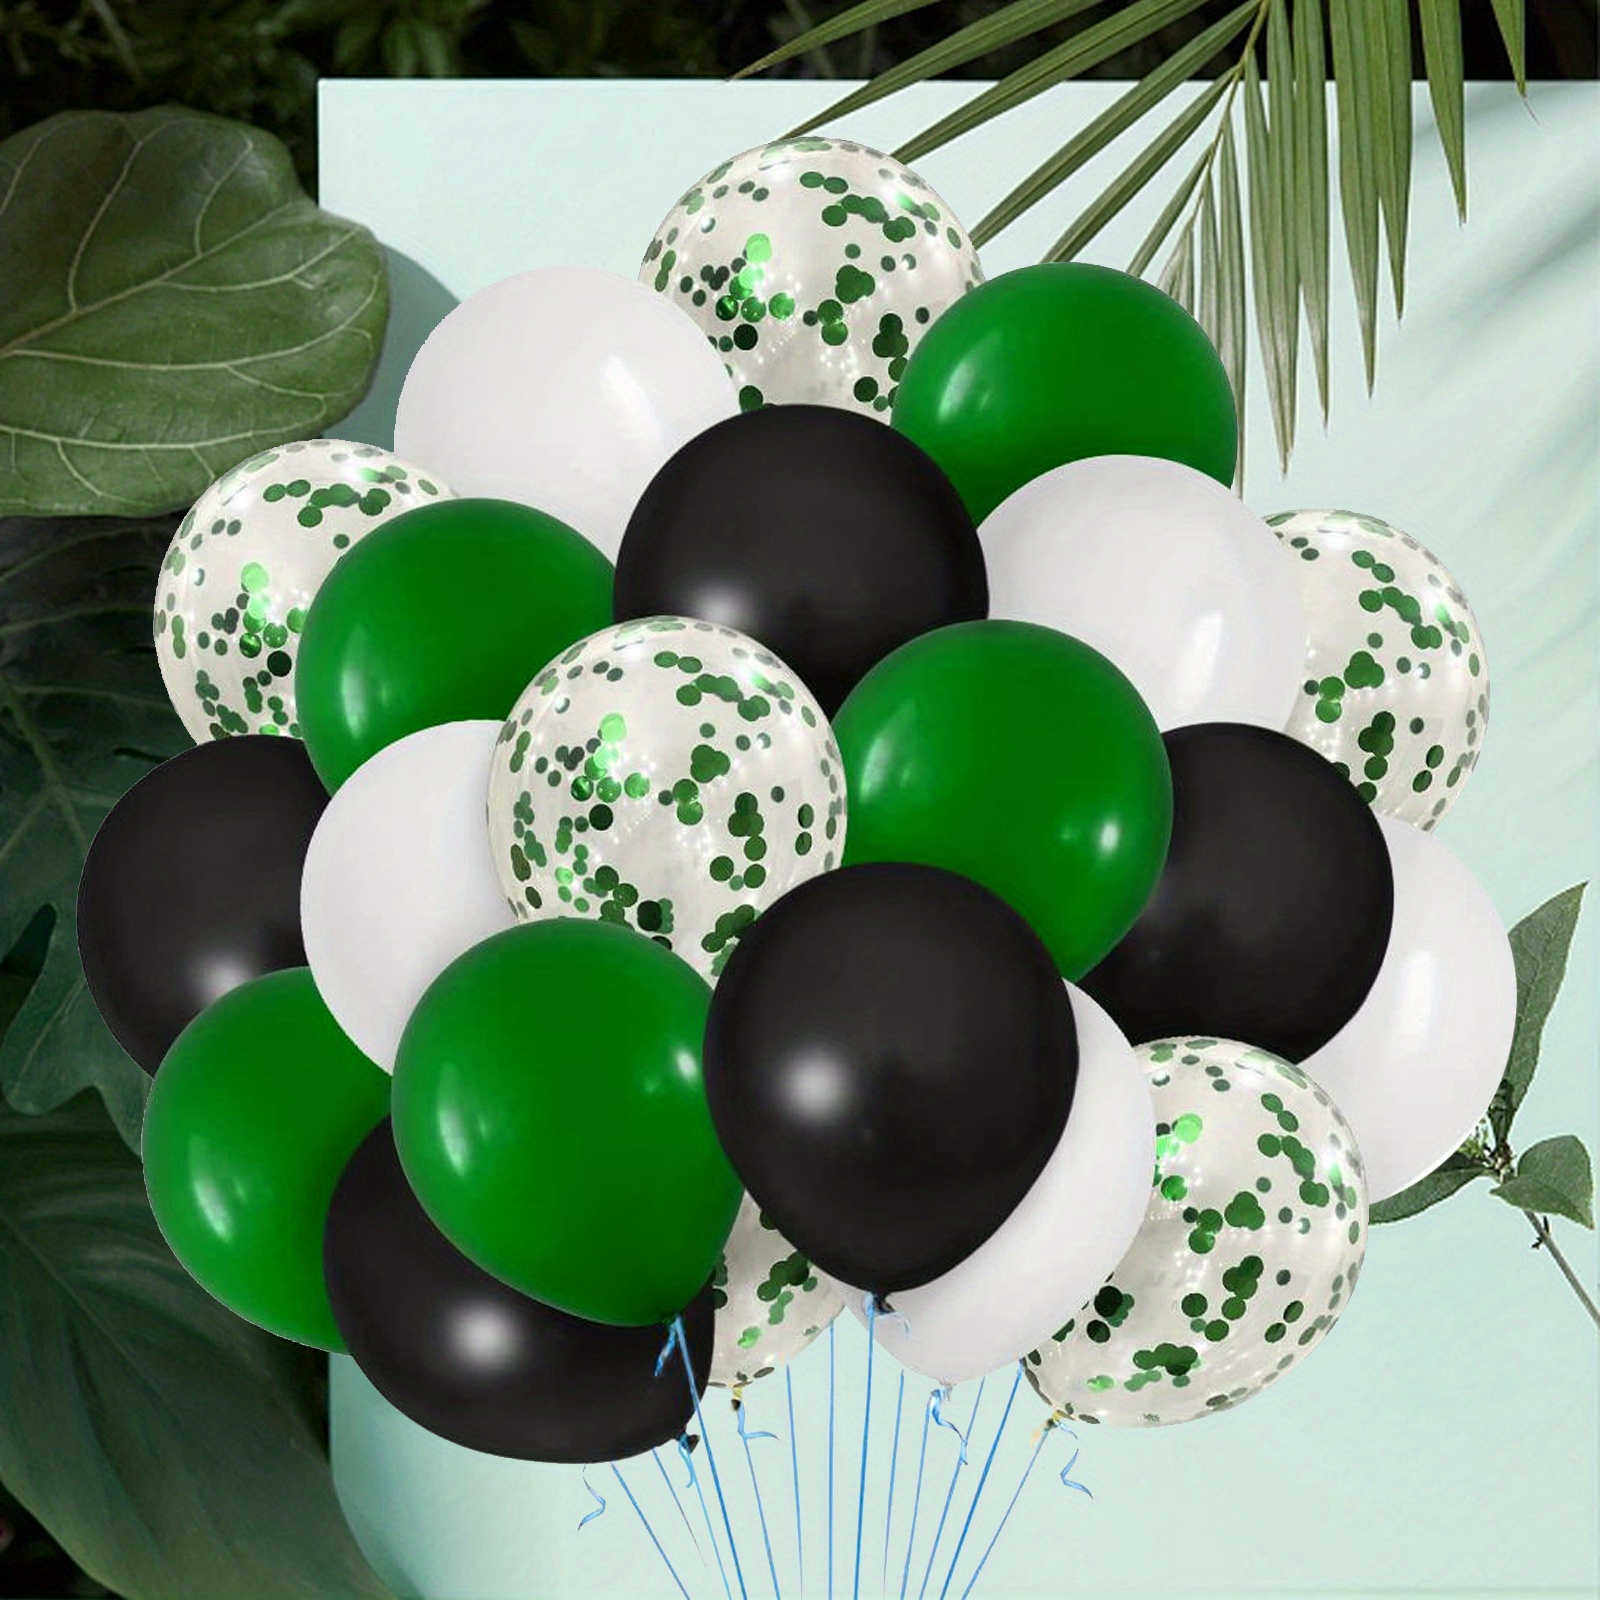 Globos negros dorados y verdes, 60 globos verdes de 12 pulgadas, globos  negros y globos dorados, globos verdes dorados y negros para decoraciones  de